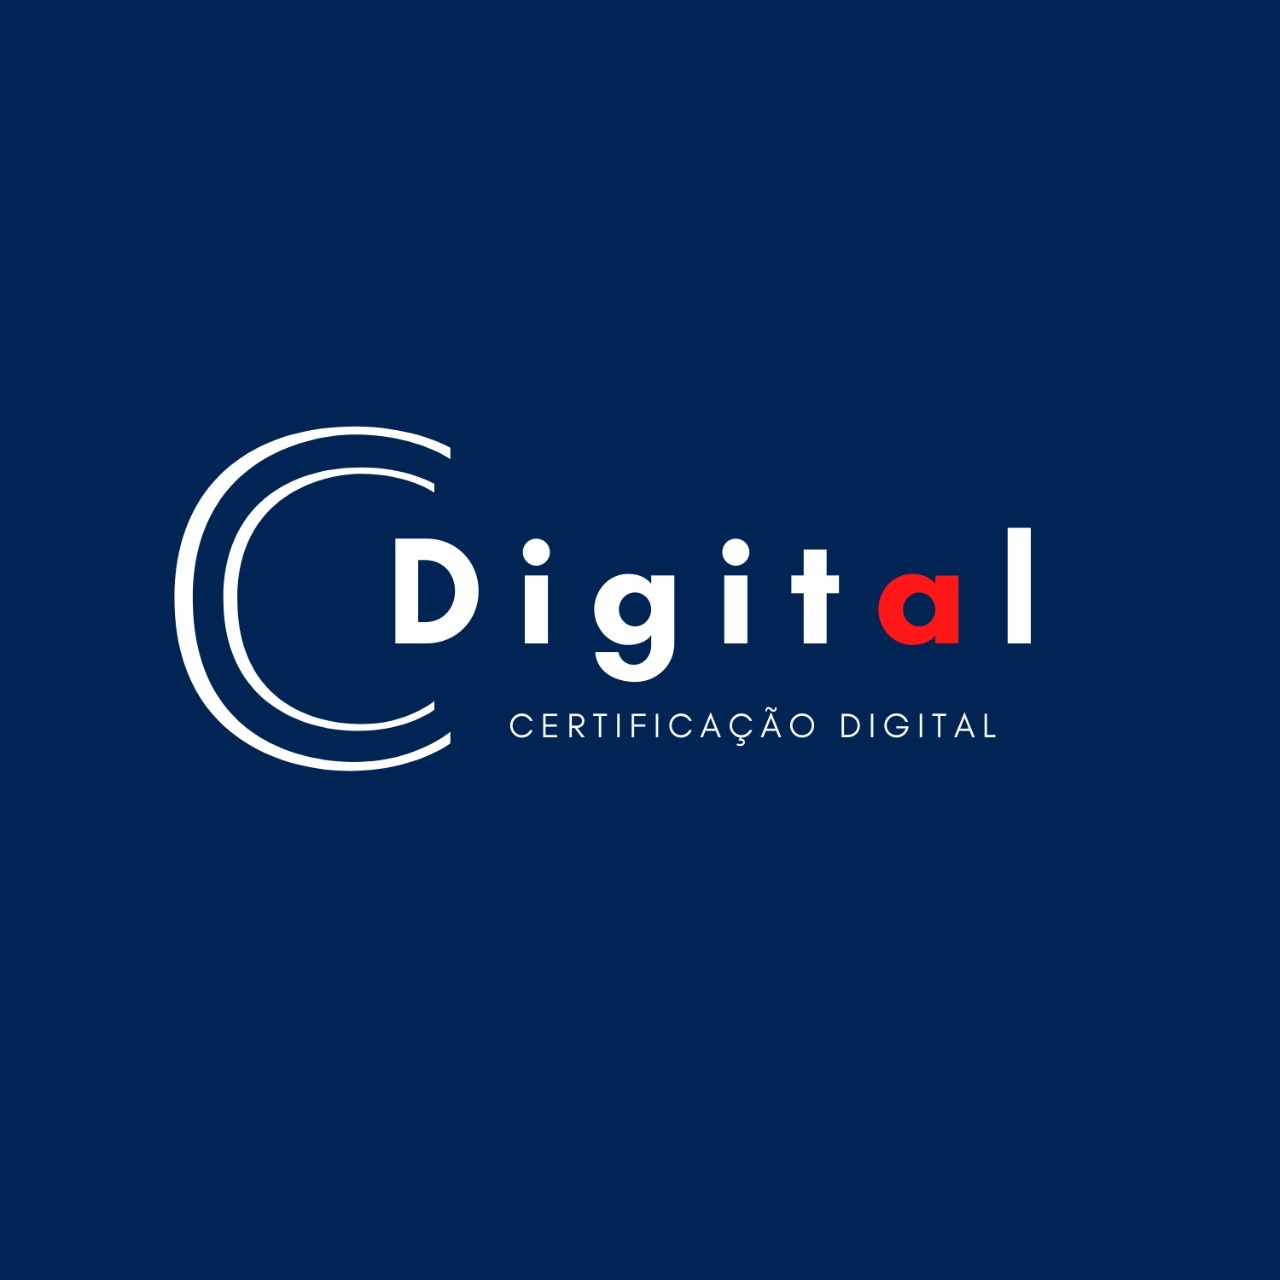 Logotipo do parceiro AR Cdigital &#8211; Corium Solução Empresarial &#8211; 15%